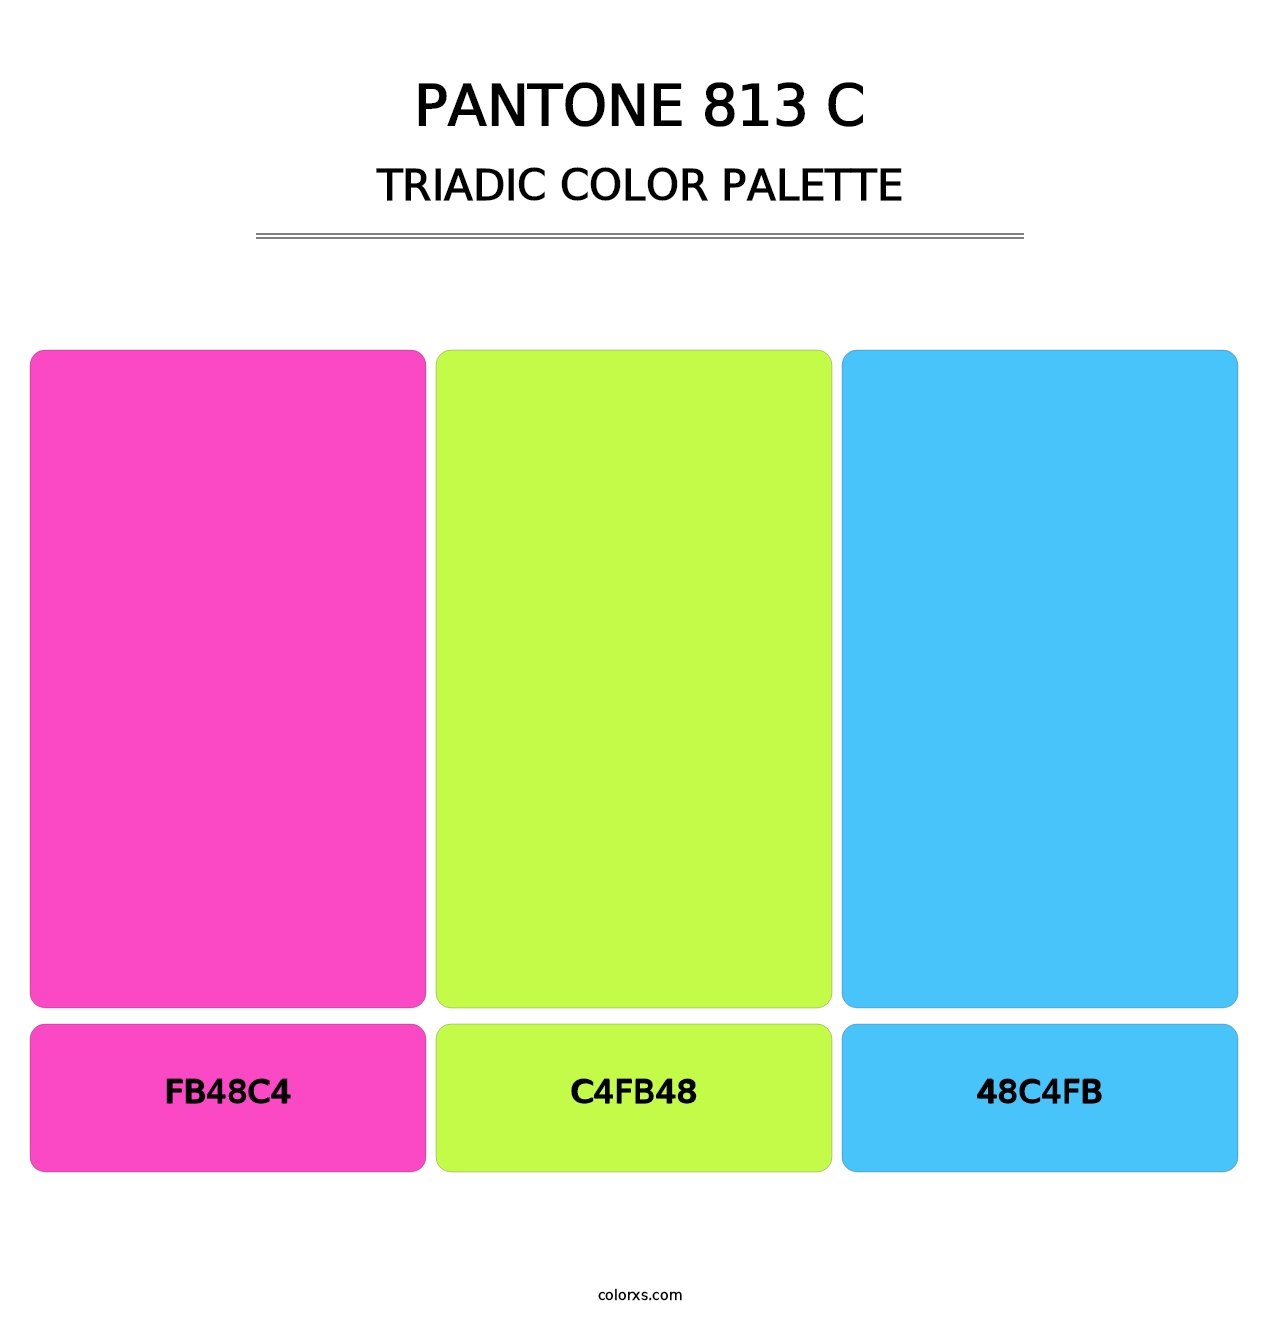 PANTONE 813 C - Triadic Color Palette